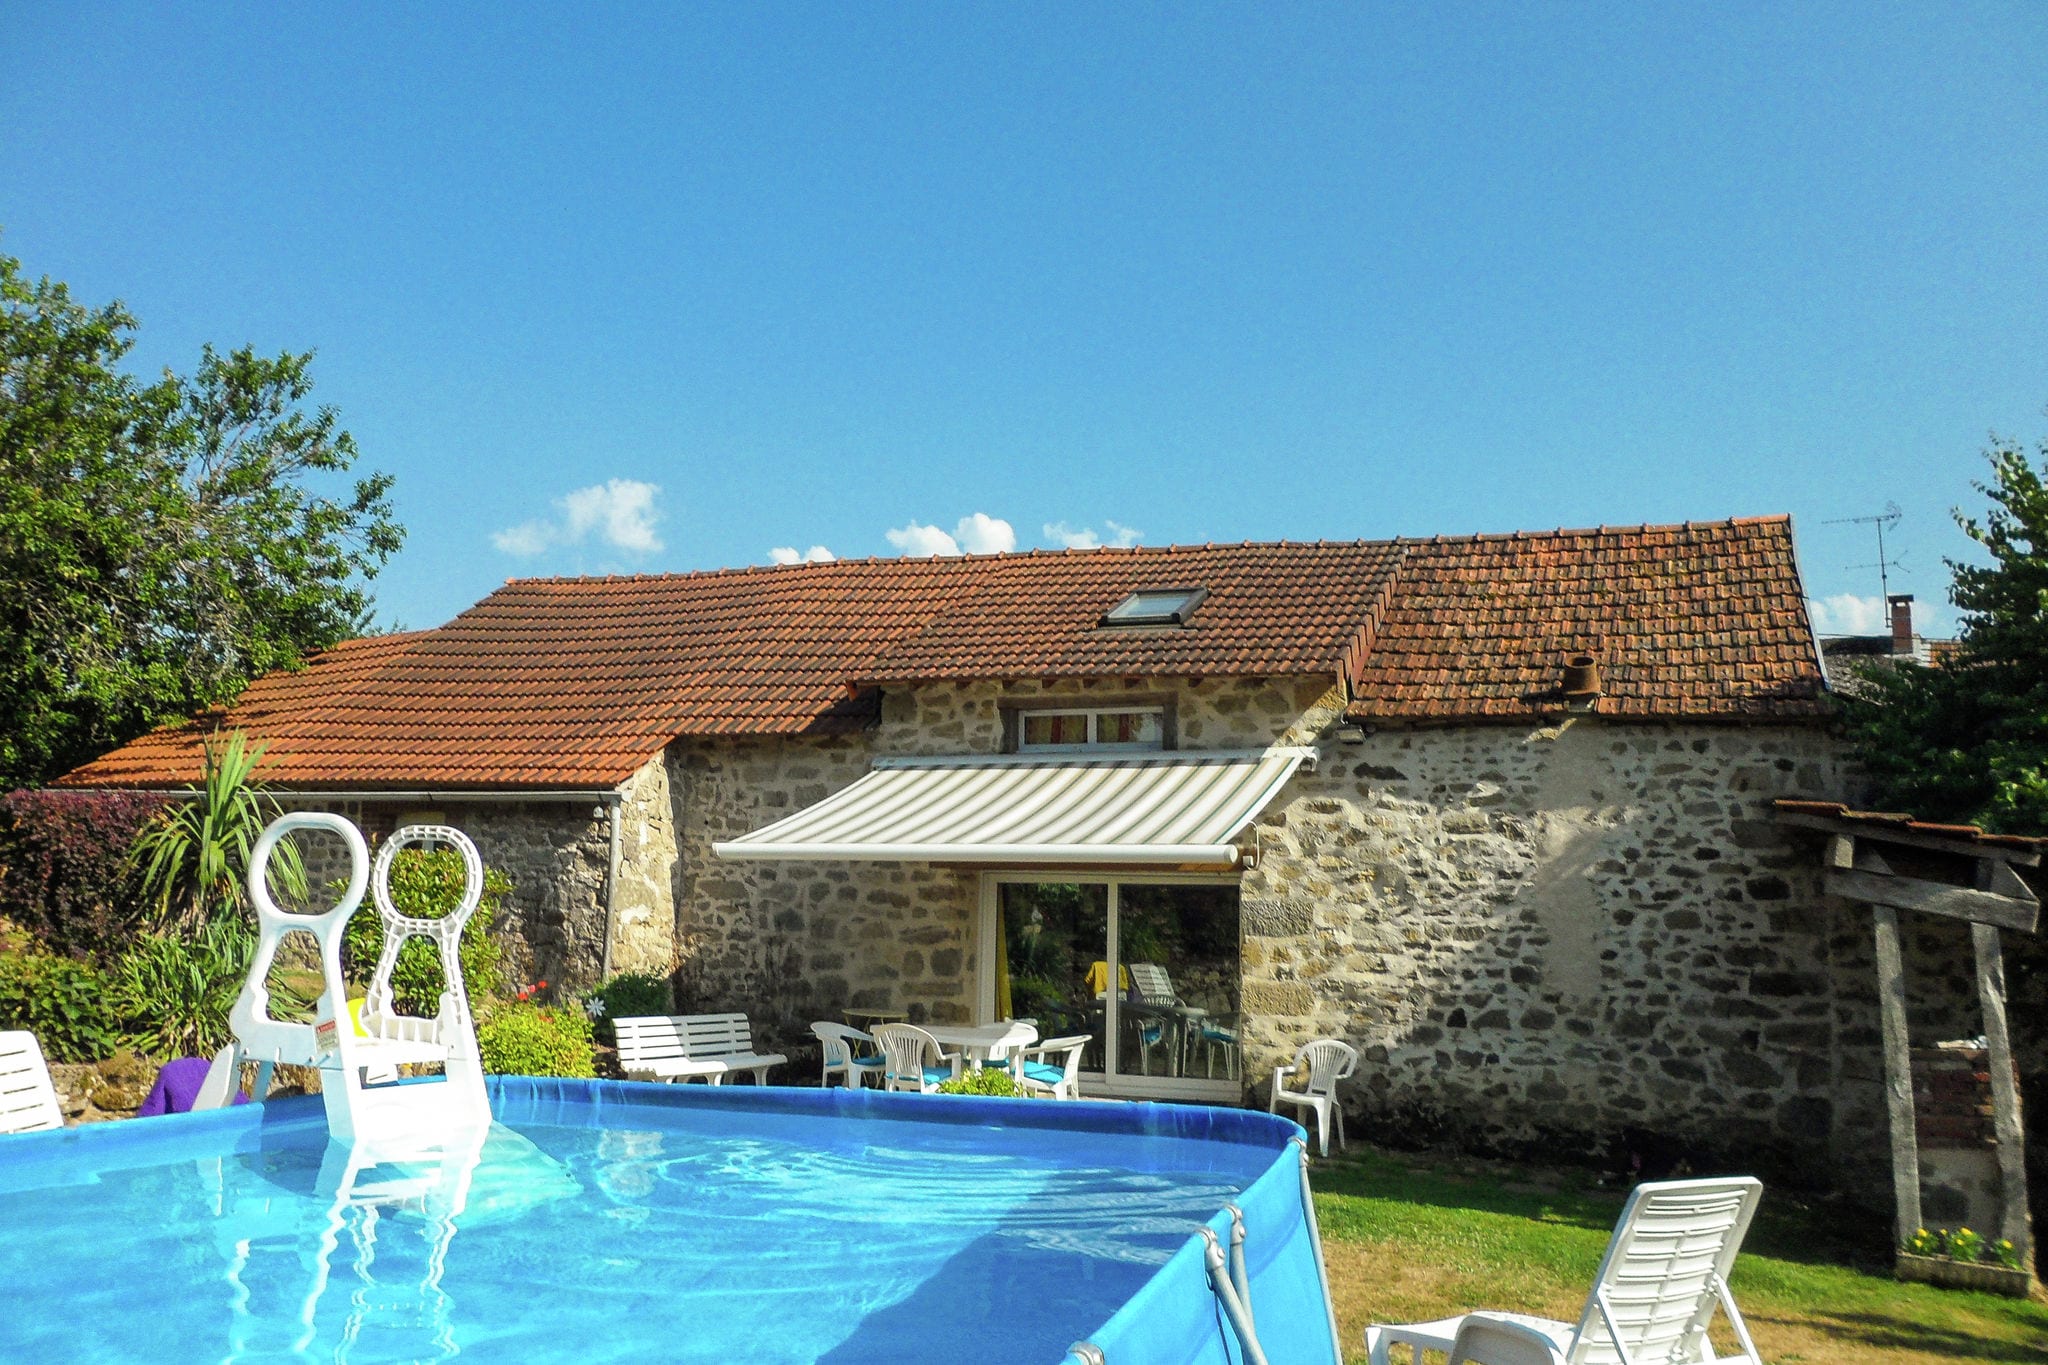 Maison de vacances confortable à Marsac, France avec piscine